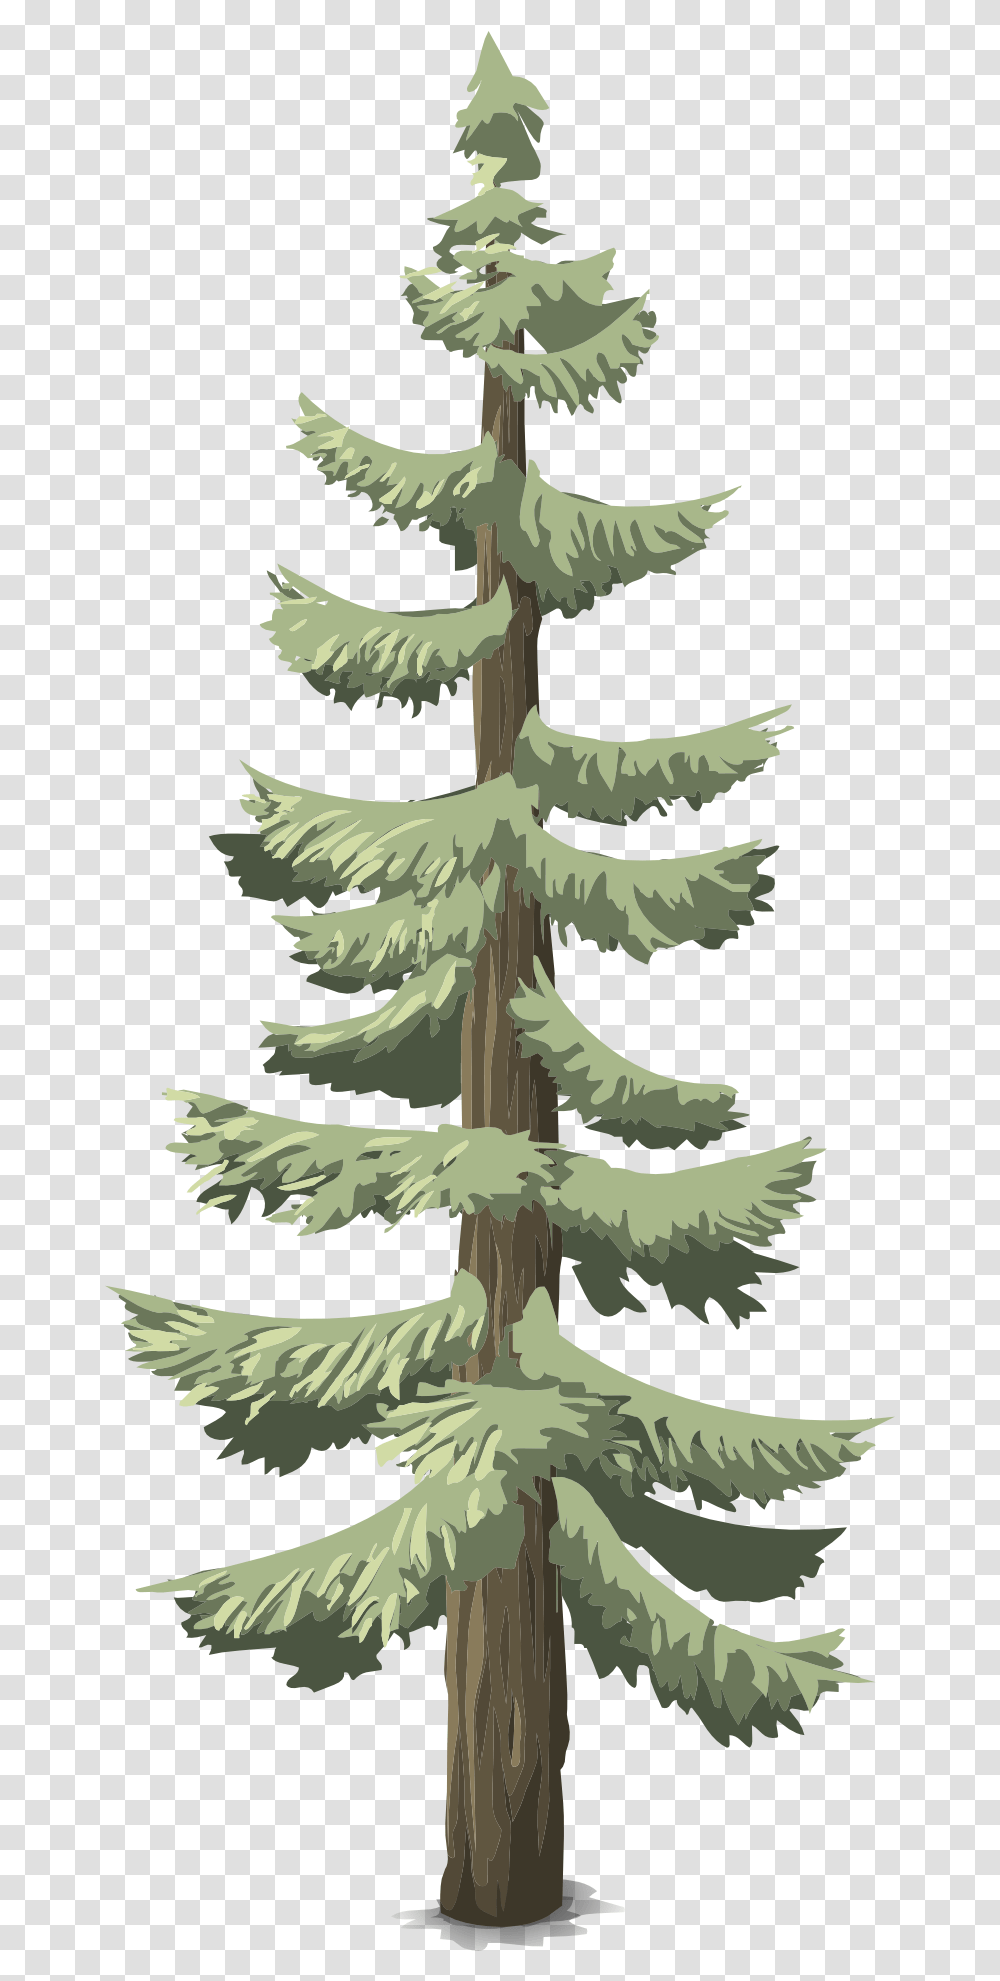 Arbol De Bosque, Tree, Plant, Conifer, Pine Transparent Png